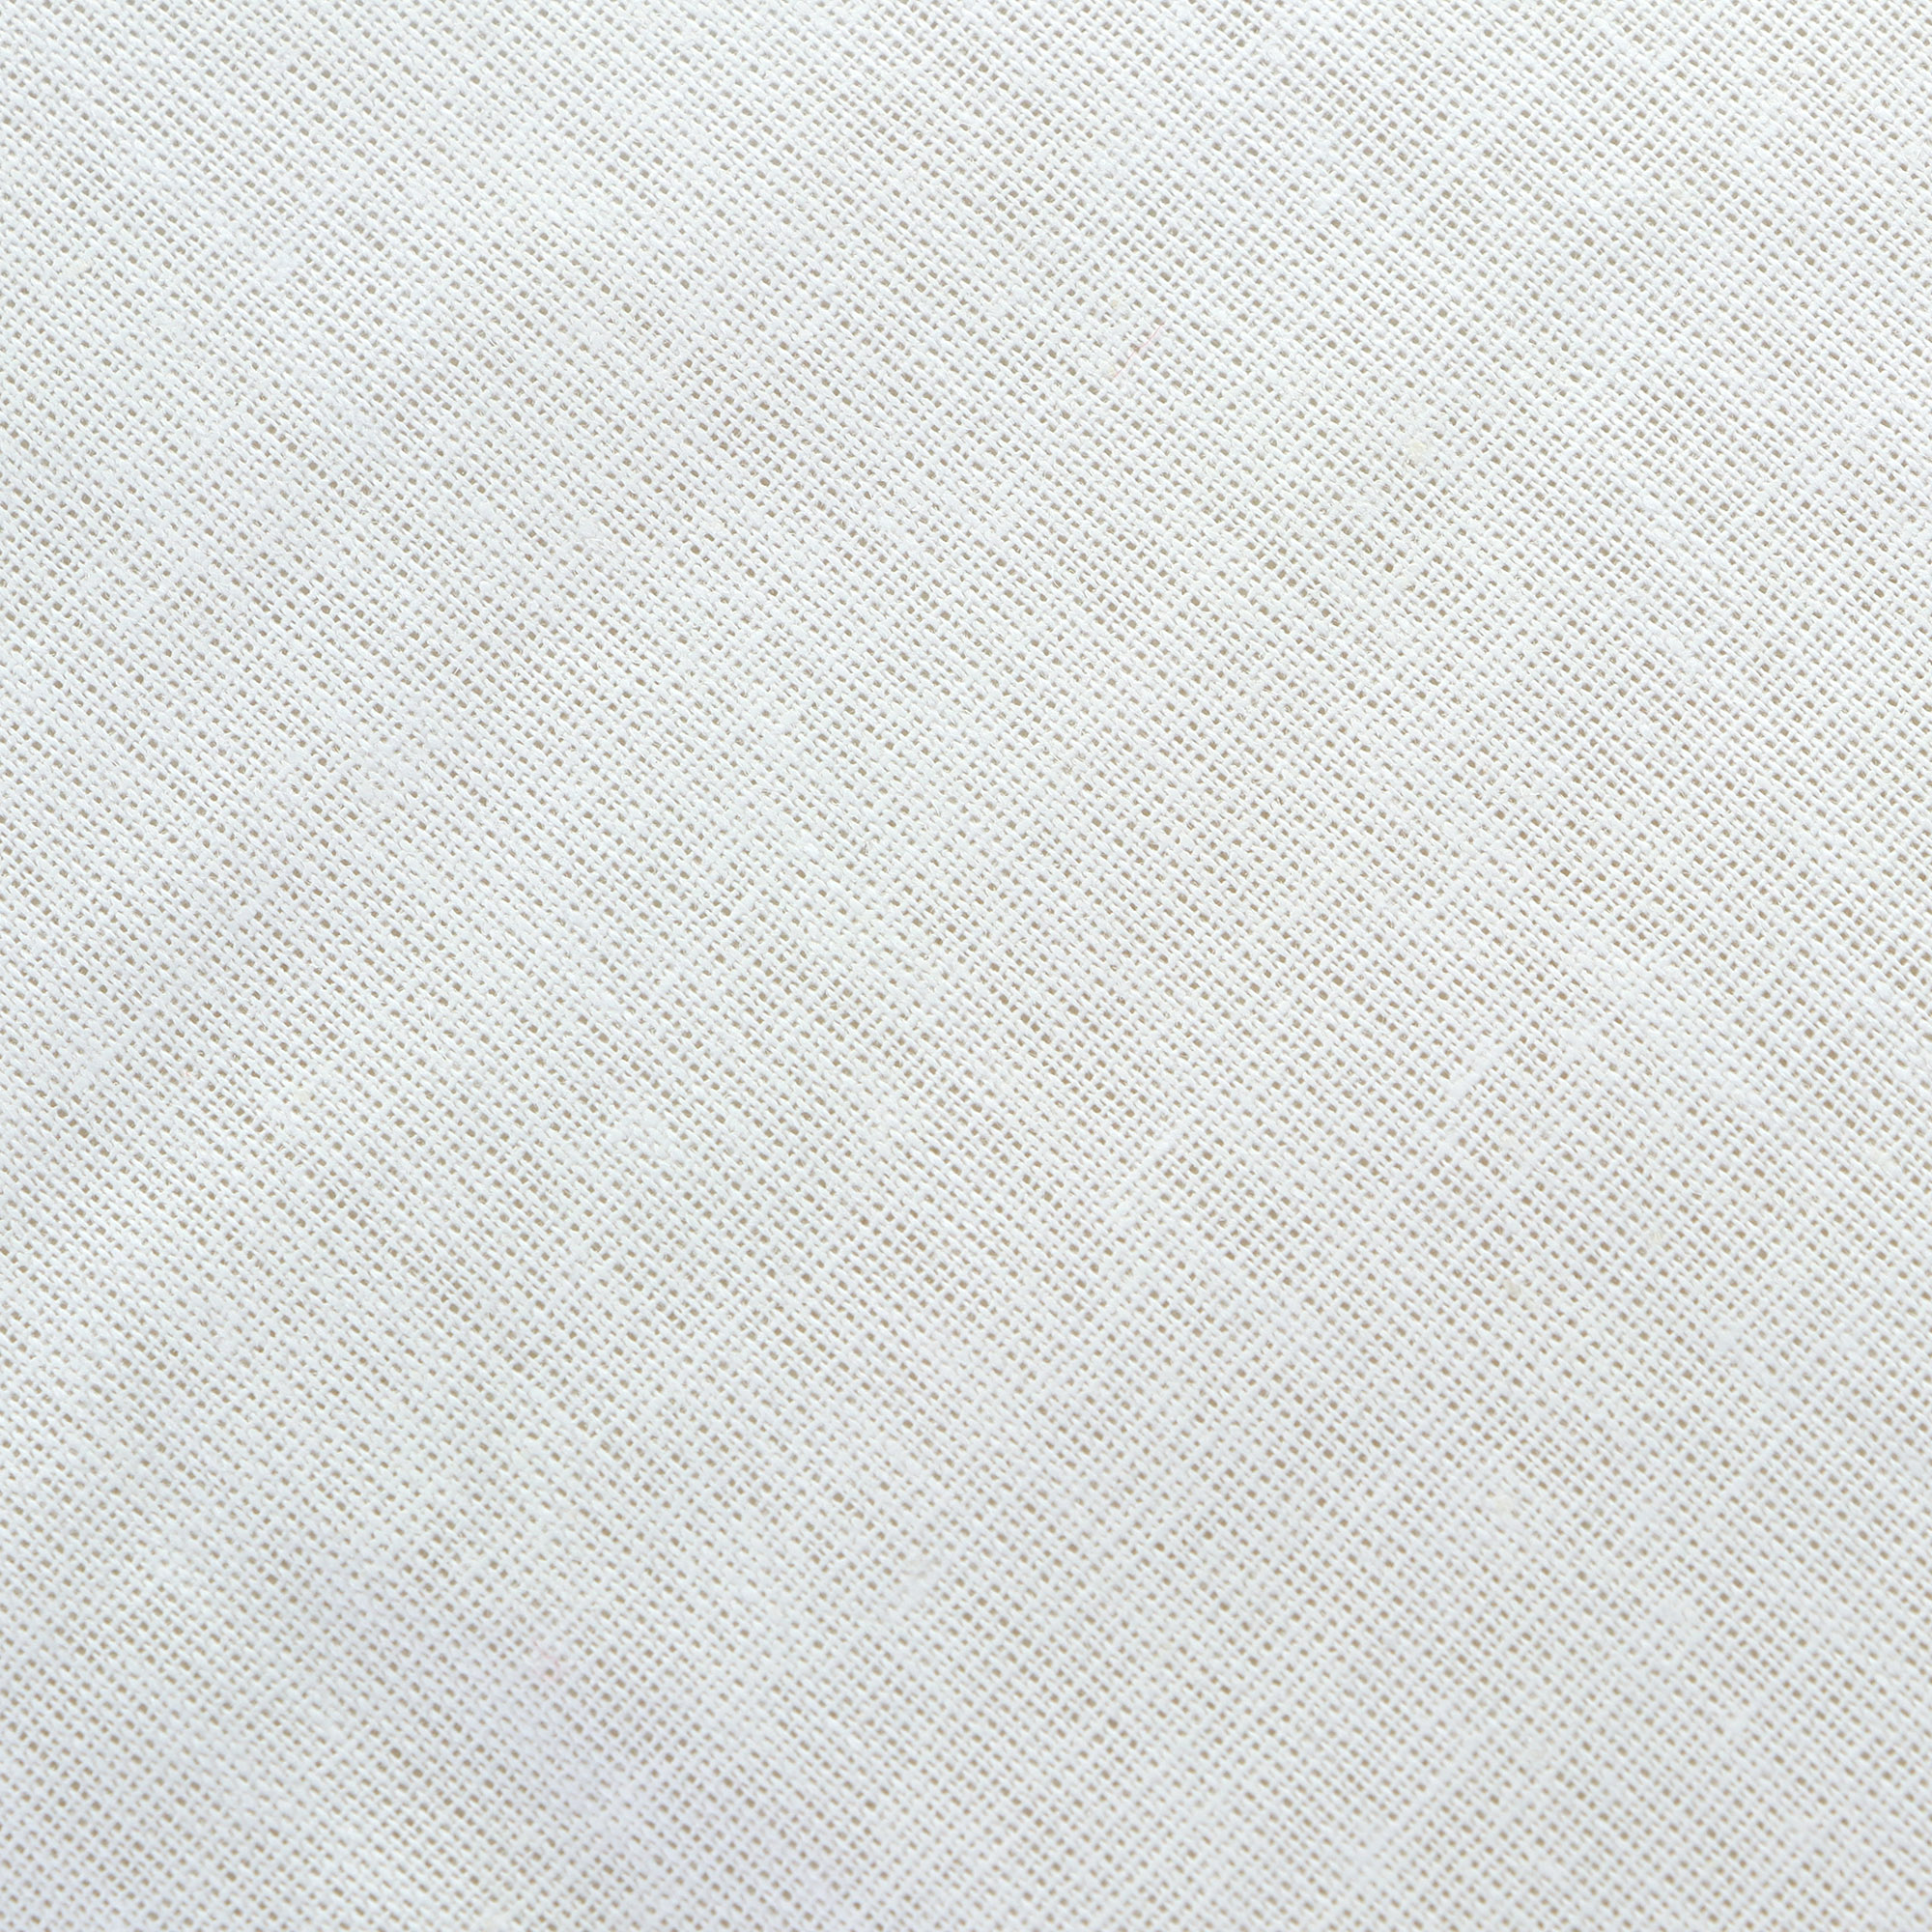 Одеяло Medsleep Skylor белое 175х200 см, цвет белый - фото 7